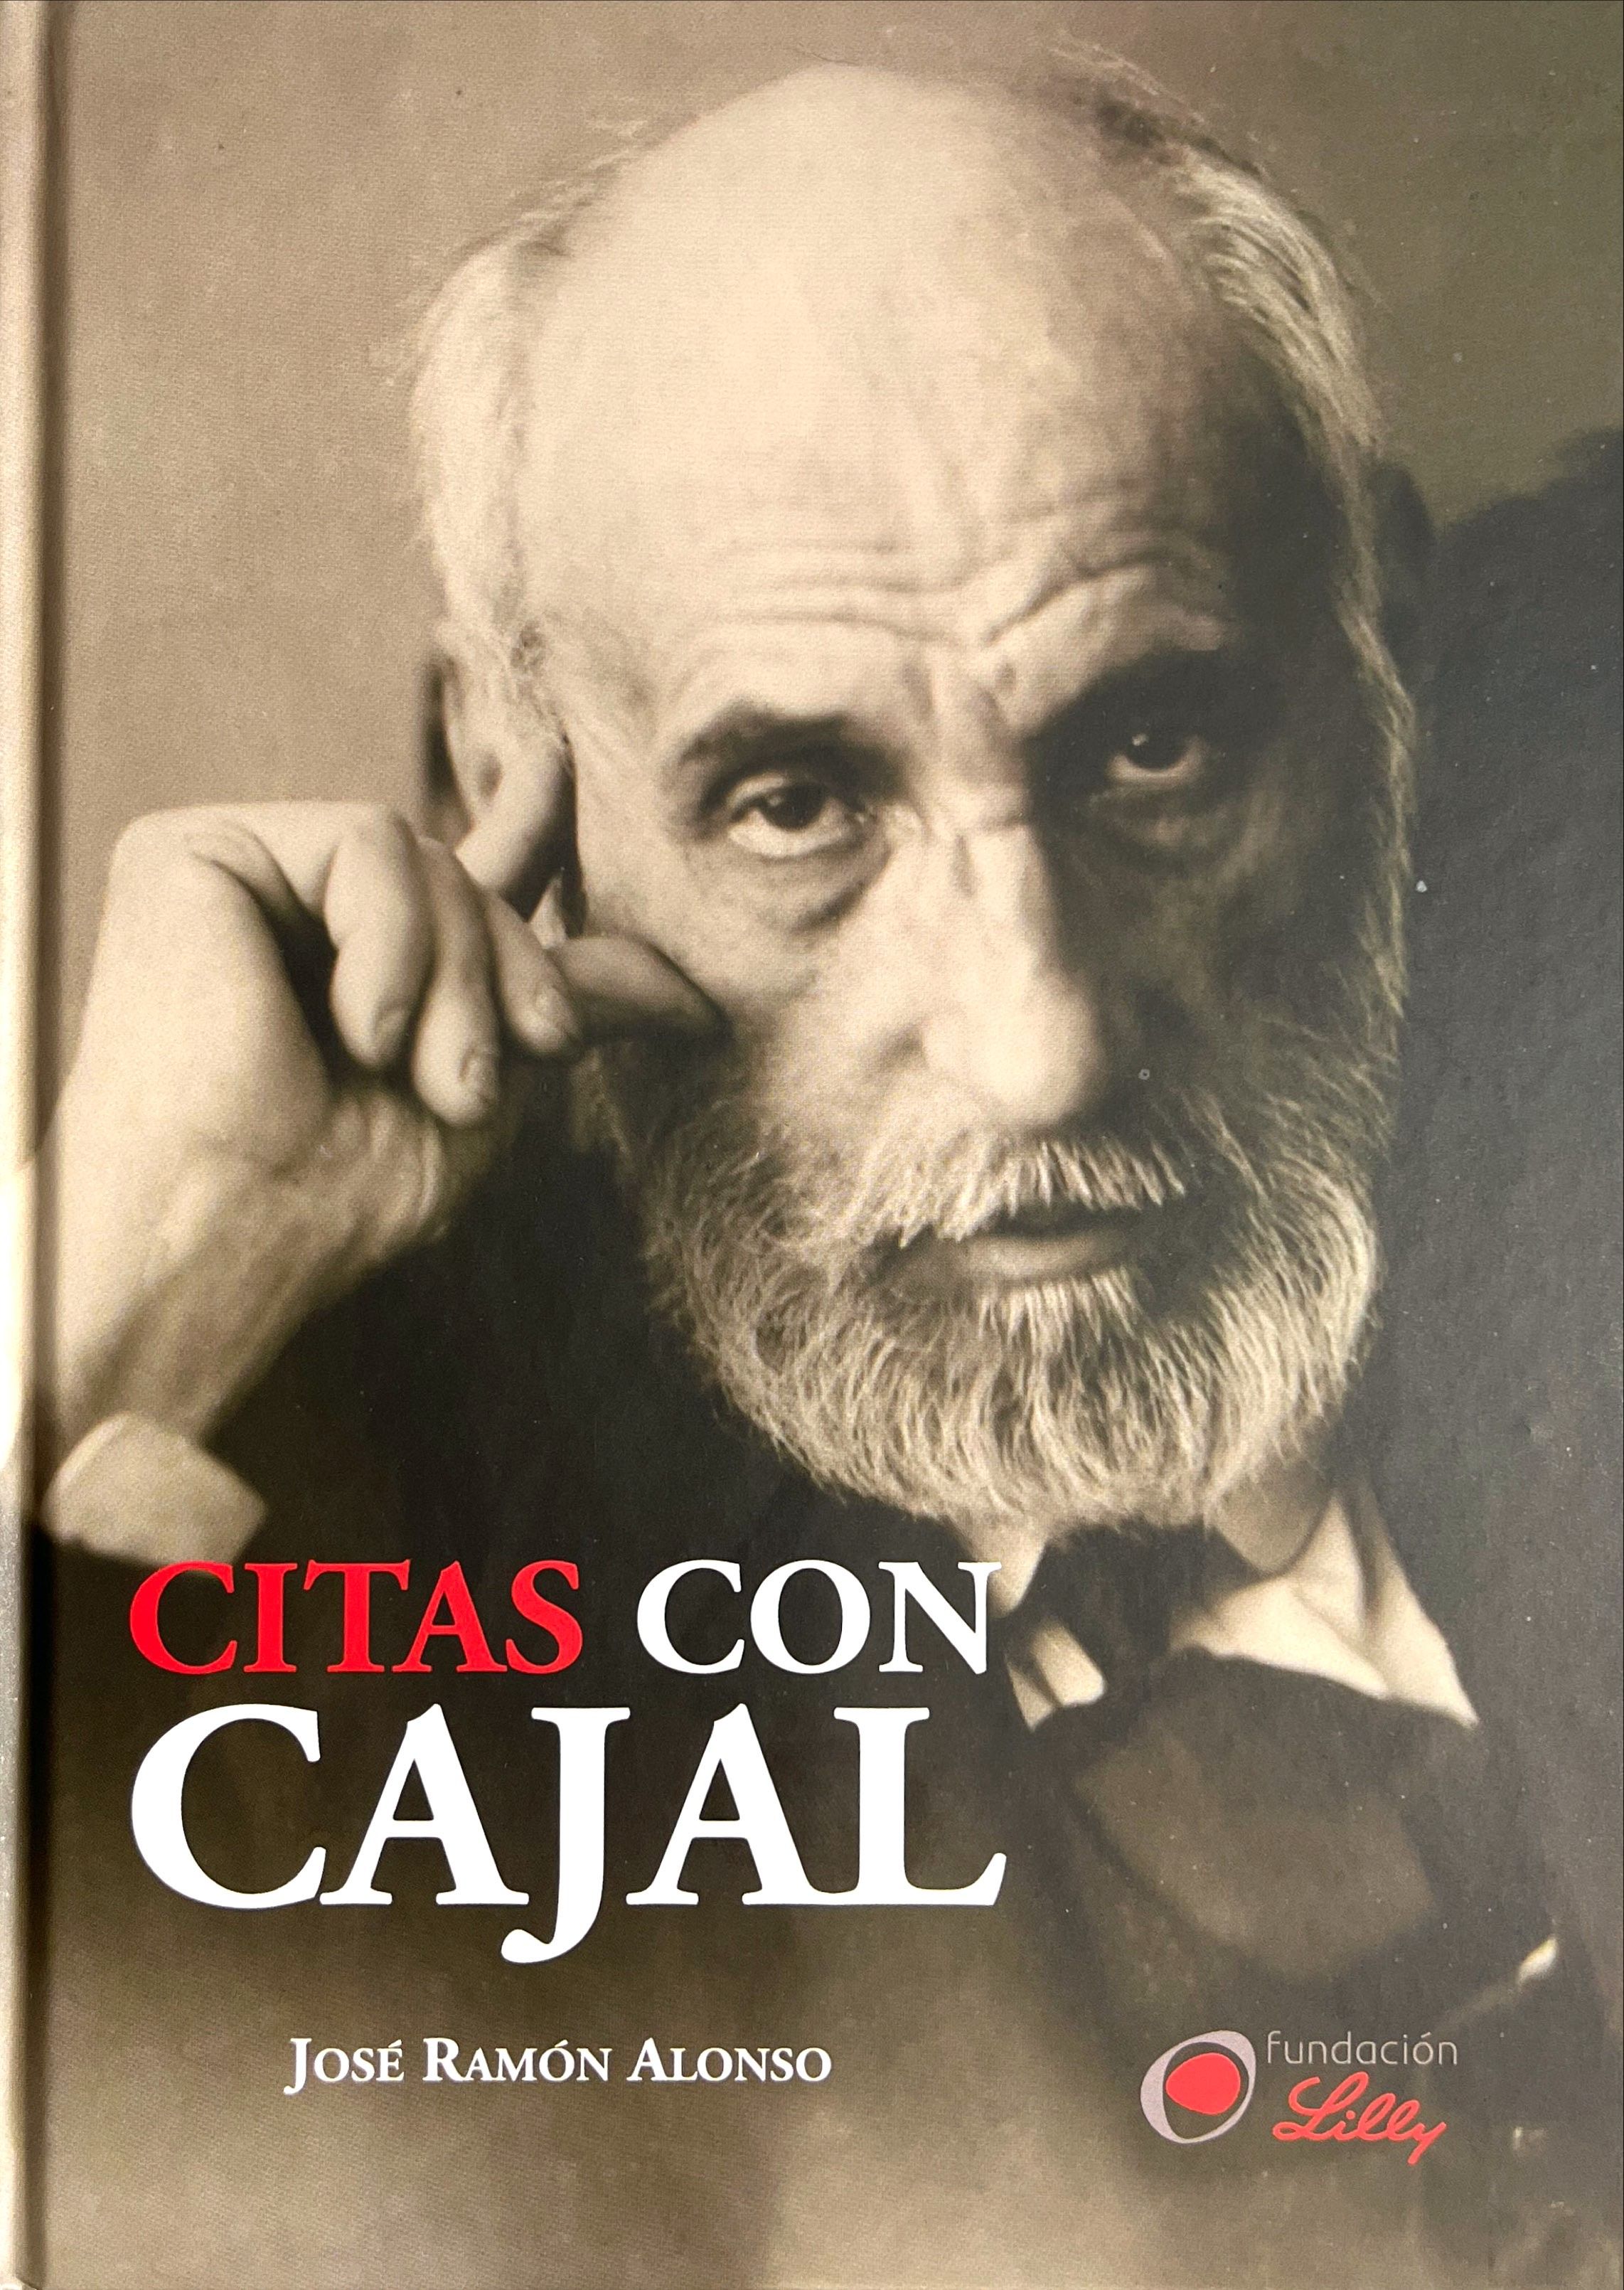 Imagen de portada del libro Citas con Cajal